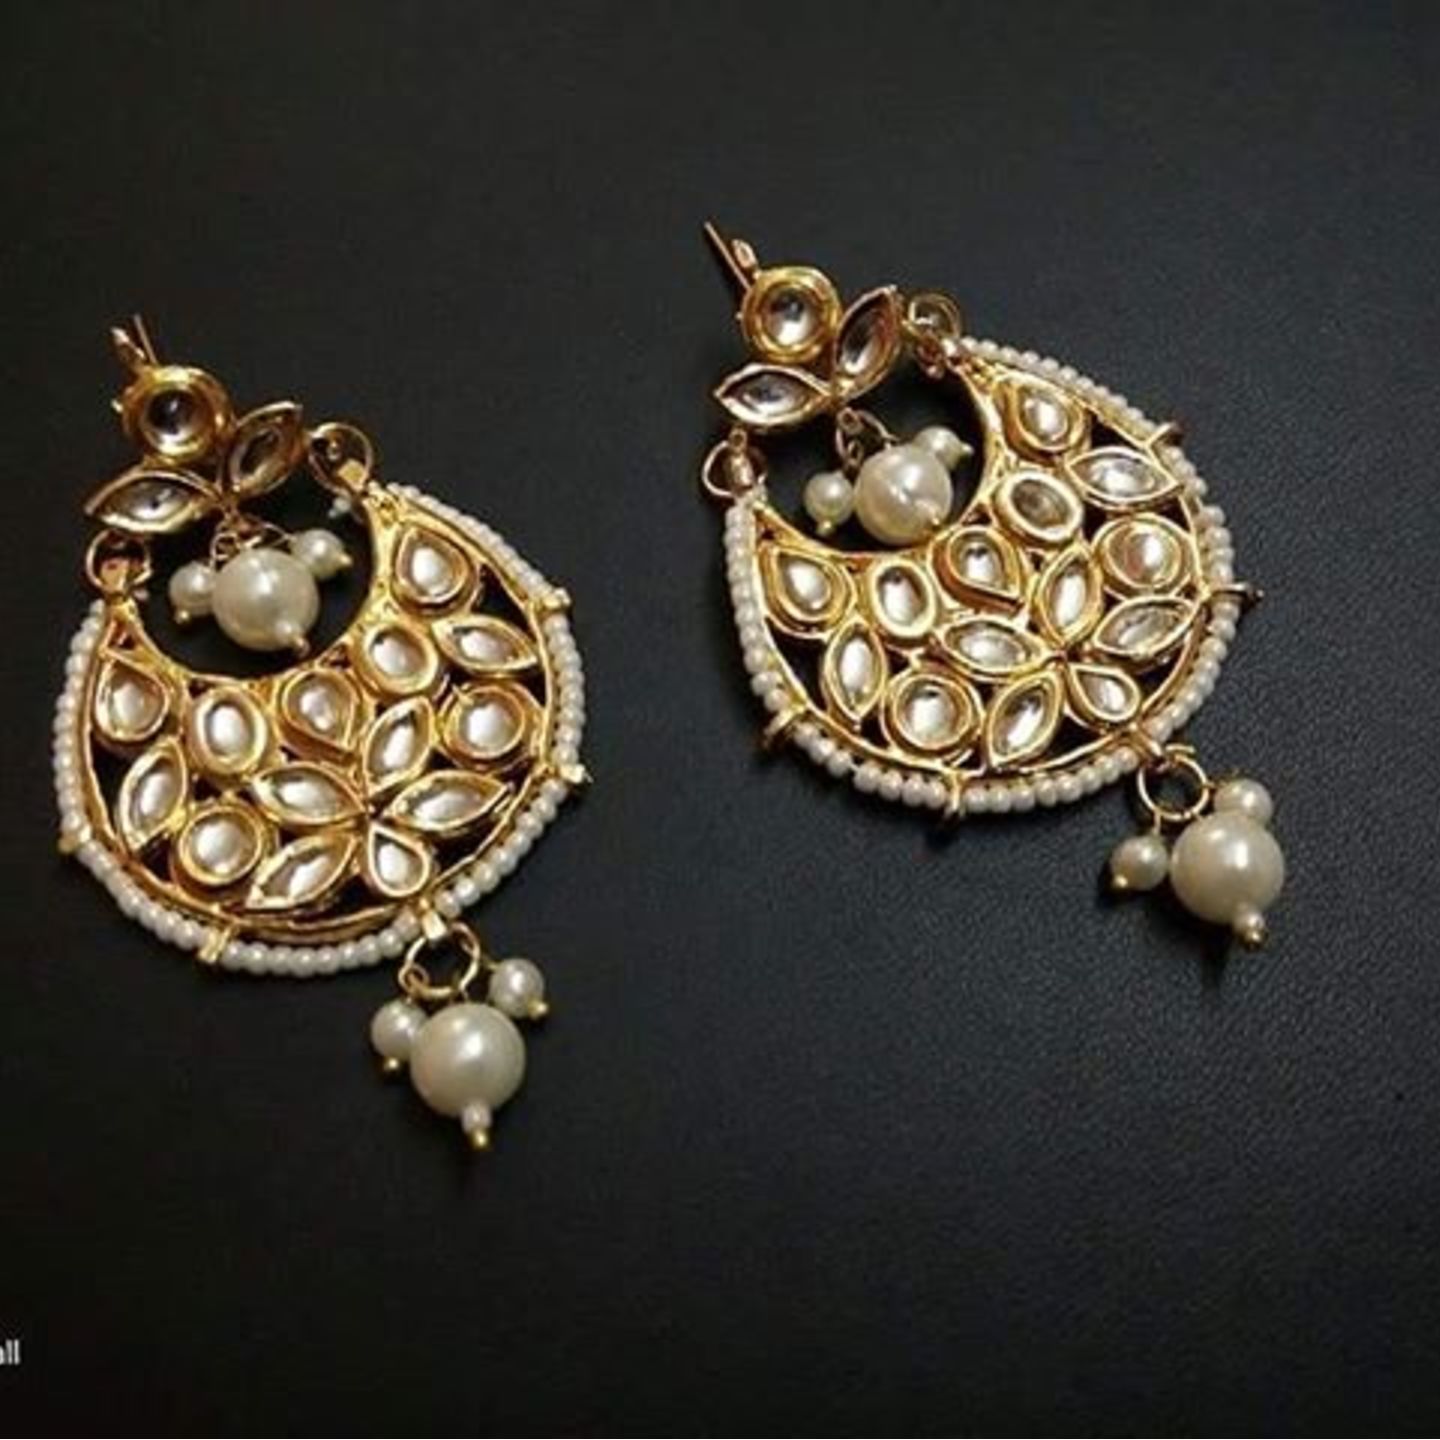 Kundan Meena Chandbali Earrings with Pearl Drop